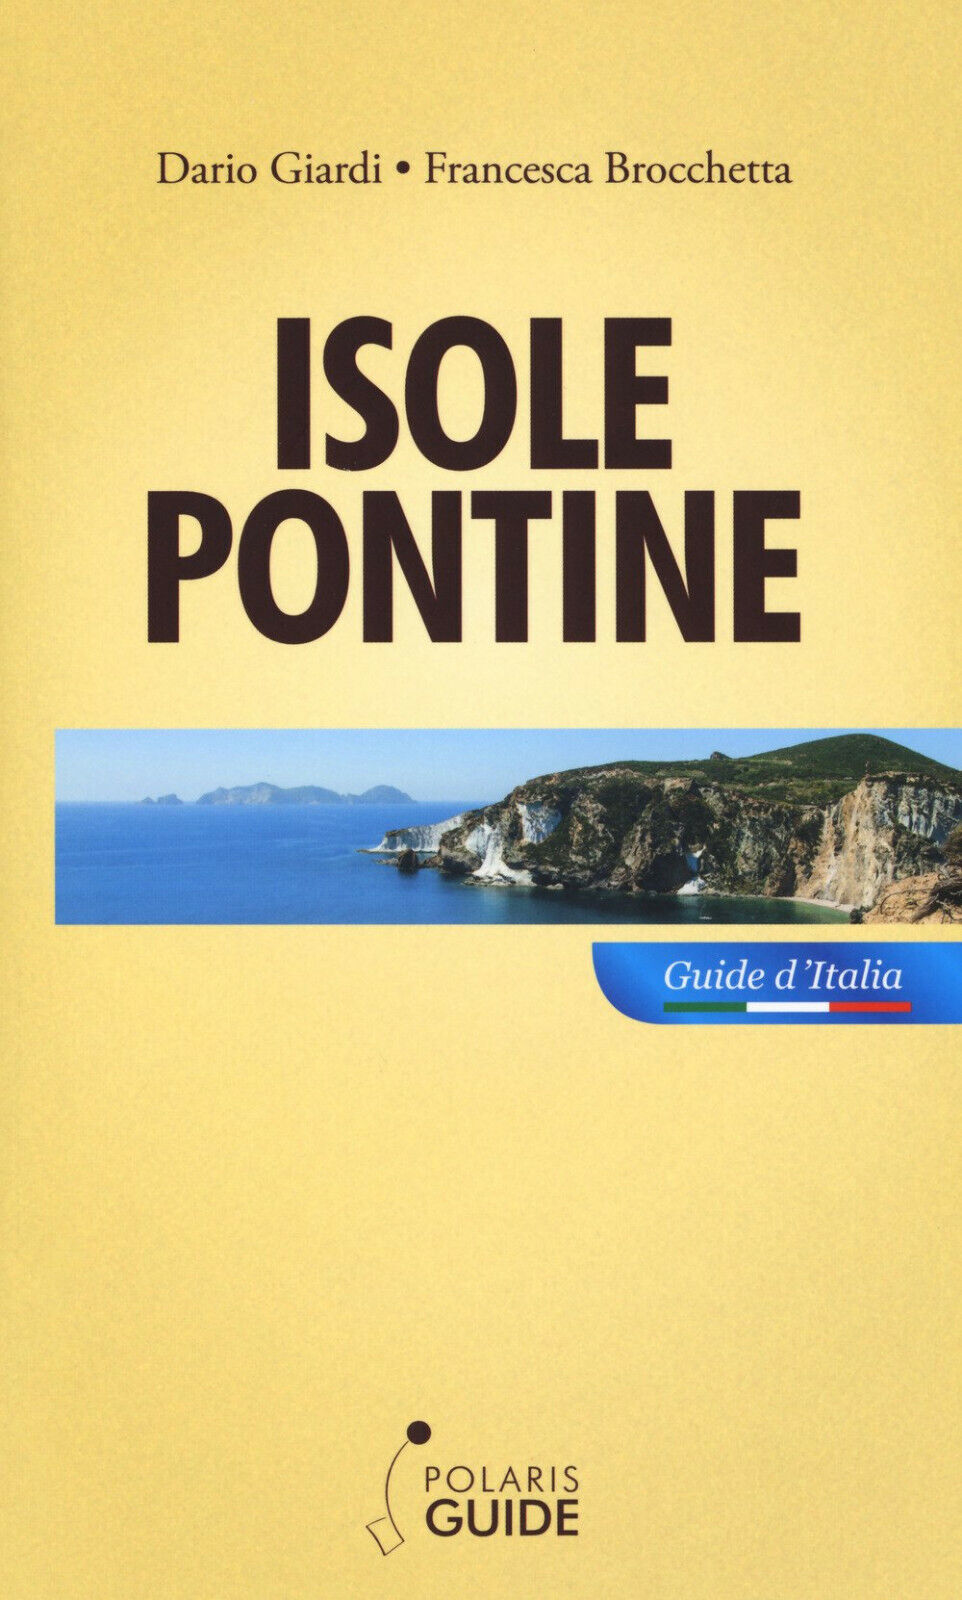 Isole Pontine - Francesca Brocchetta, Dario Giardi - Polaris, 2017